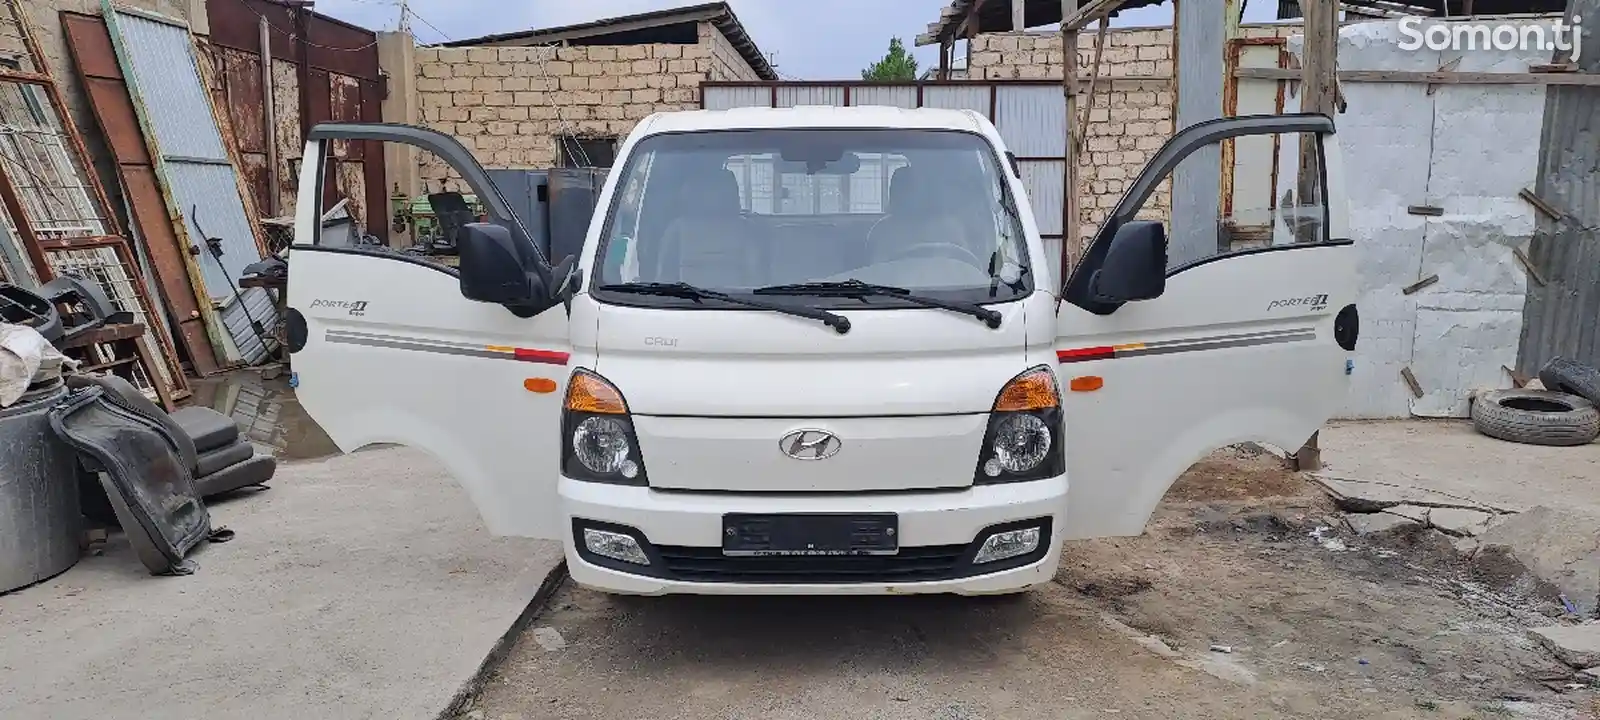 Бортовой автомобиль Hundai Porter 2, 2015-1